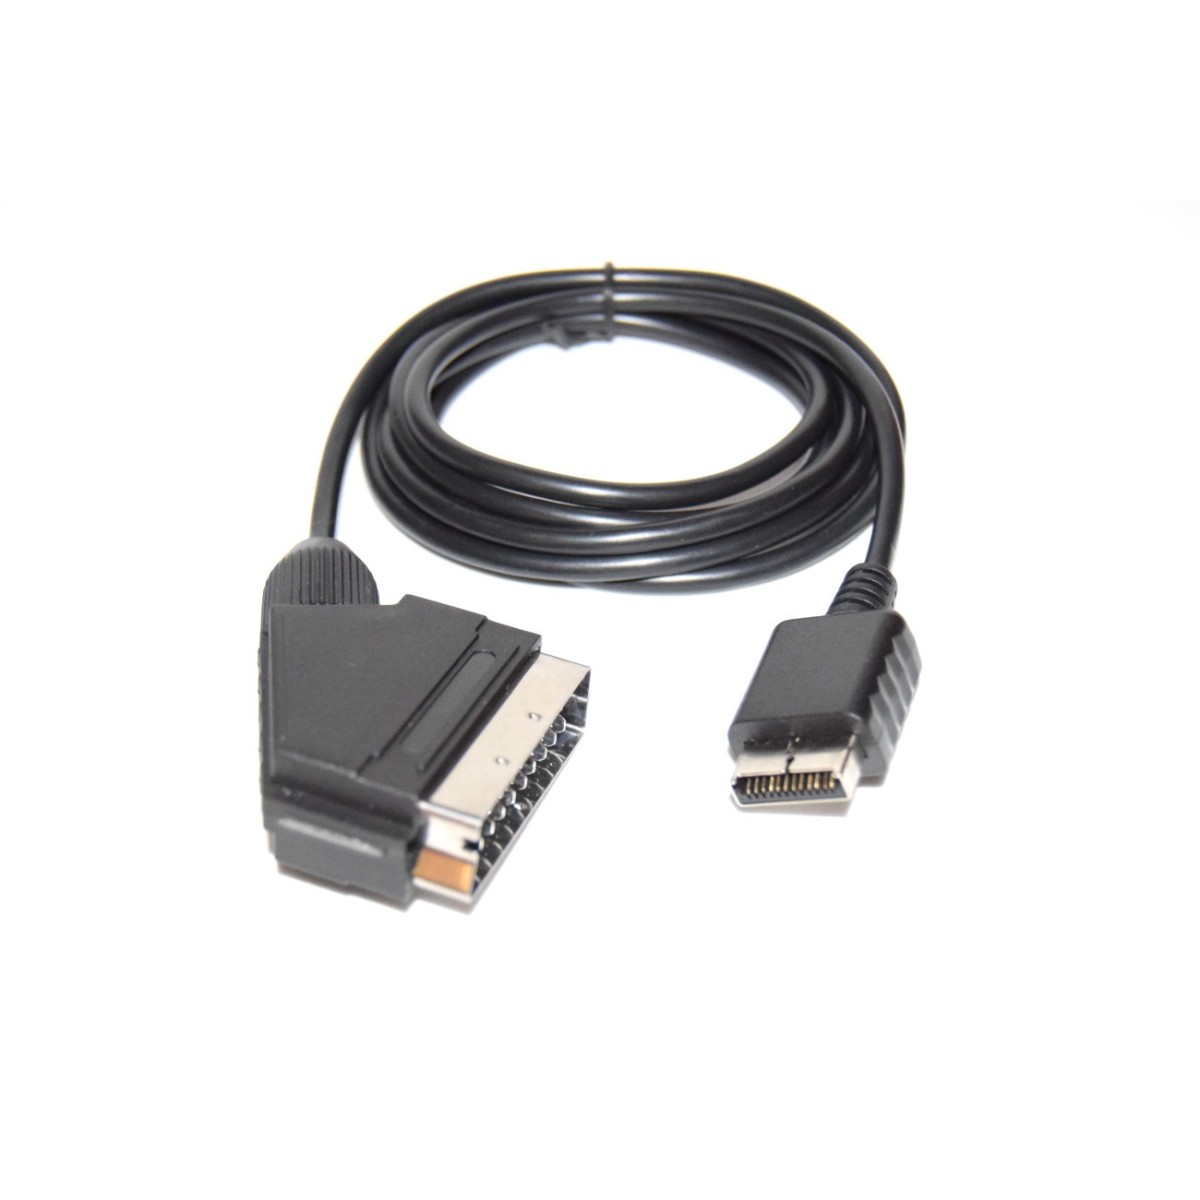 Cable euroconector para PS1 y PS2